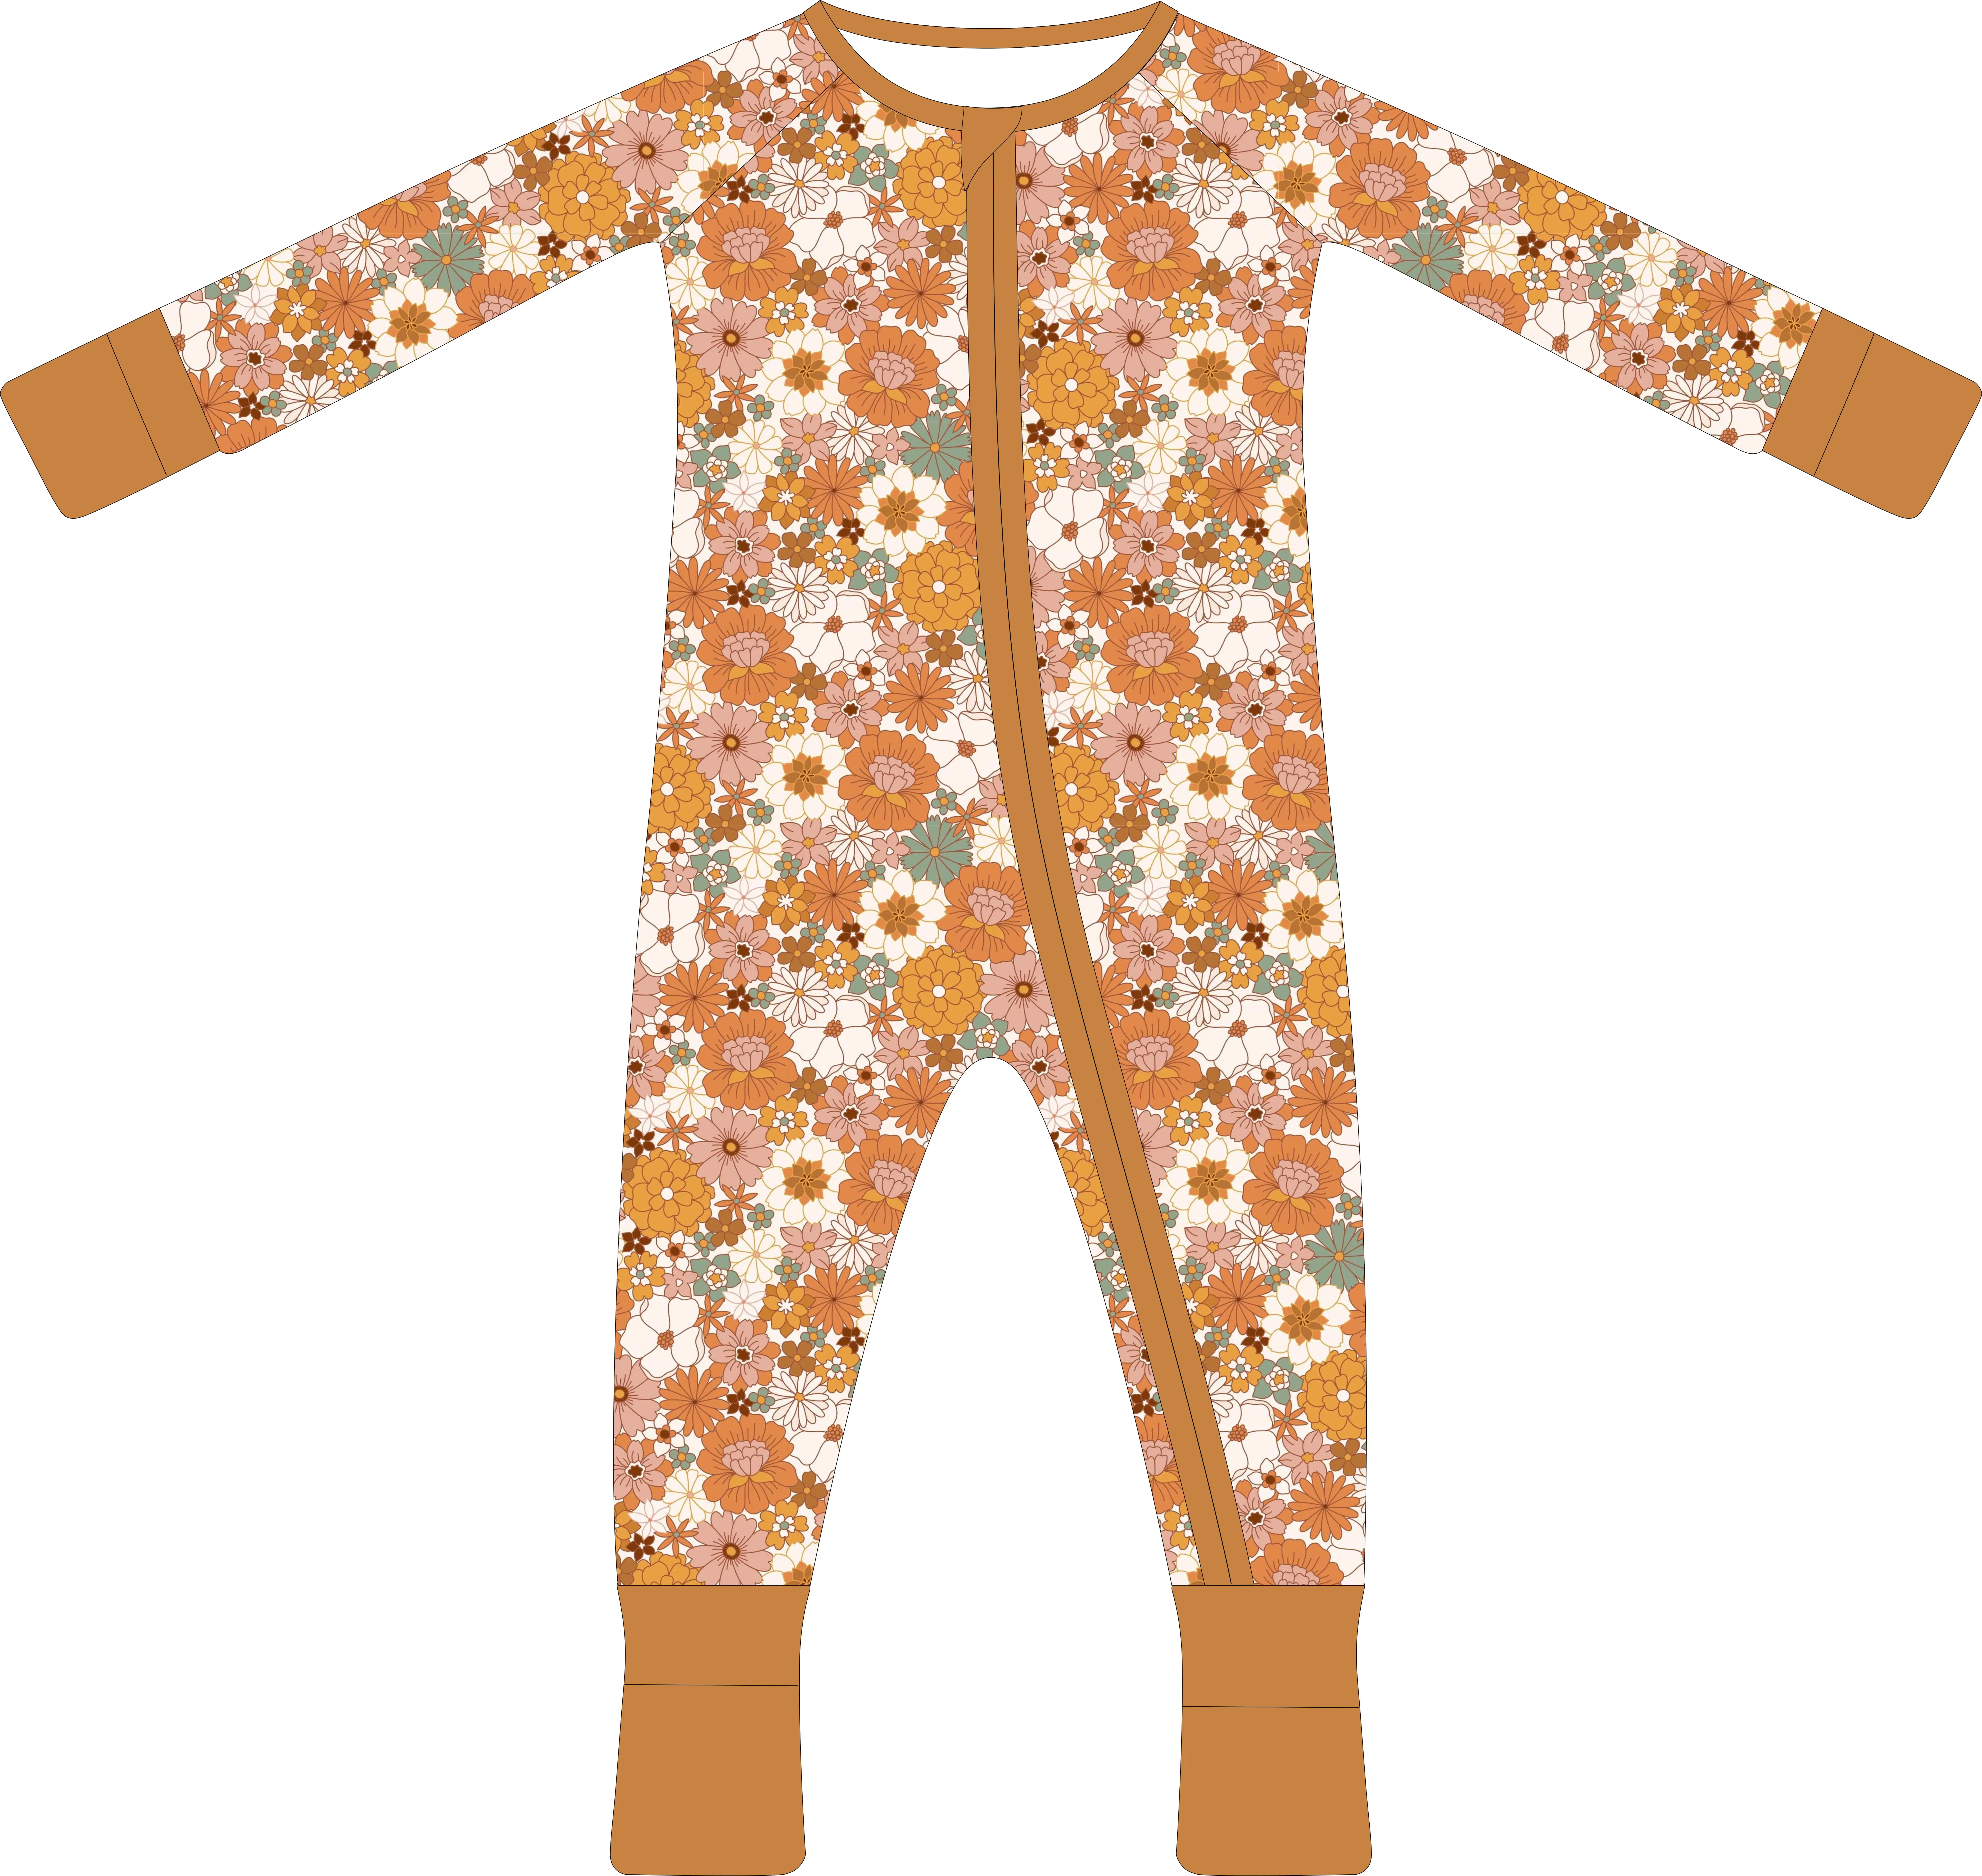 ملابس رومبير للأطفال الرضع بطباعة مخصصة عضوية من الخيزران والسبانديكس ، ملابس بيجامات للأطفال الصغار ملابس نوم للأطفال